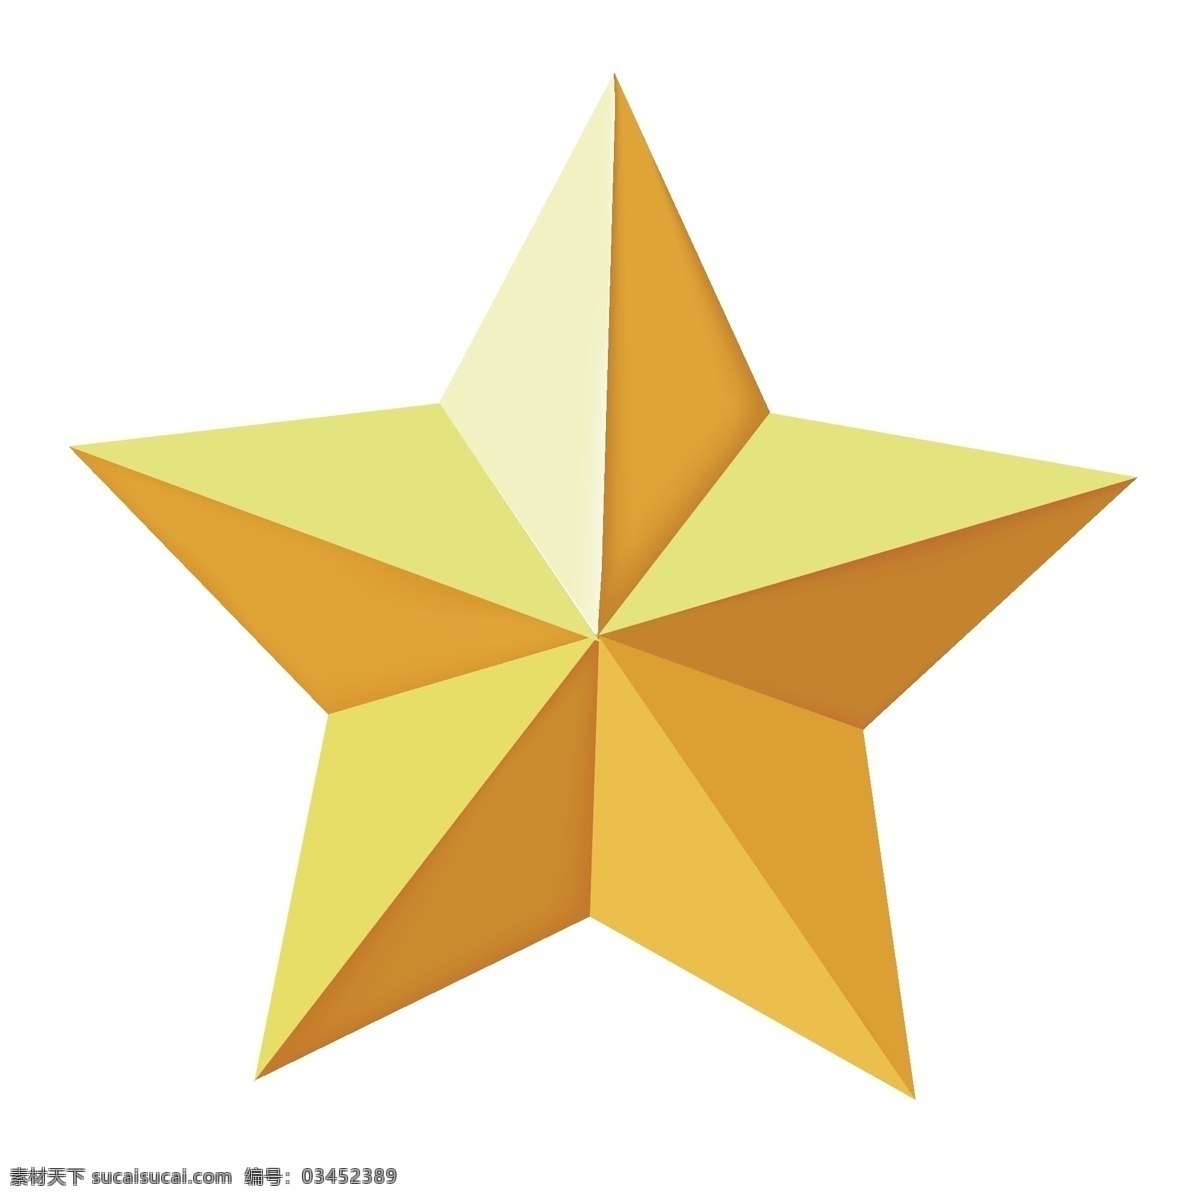 金色五角星 五角星 五角星素材 免抠五角星 红旗五角星 分层素材 分层